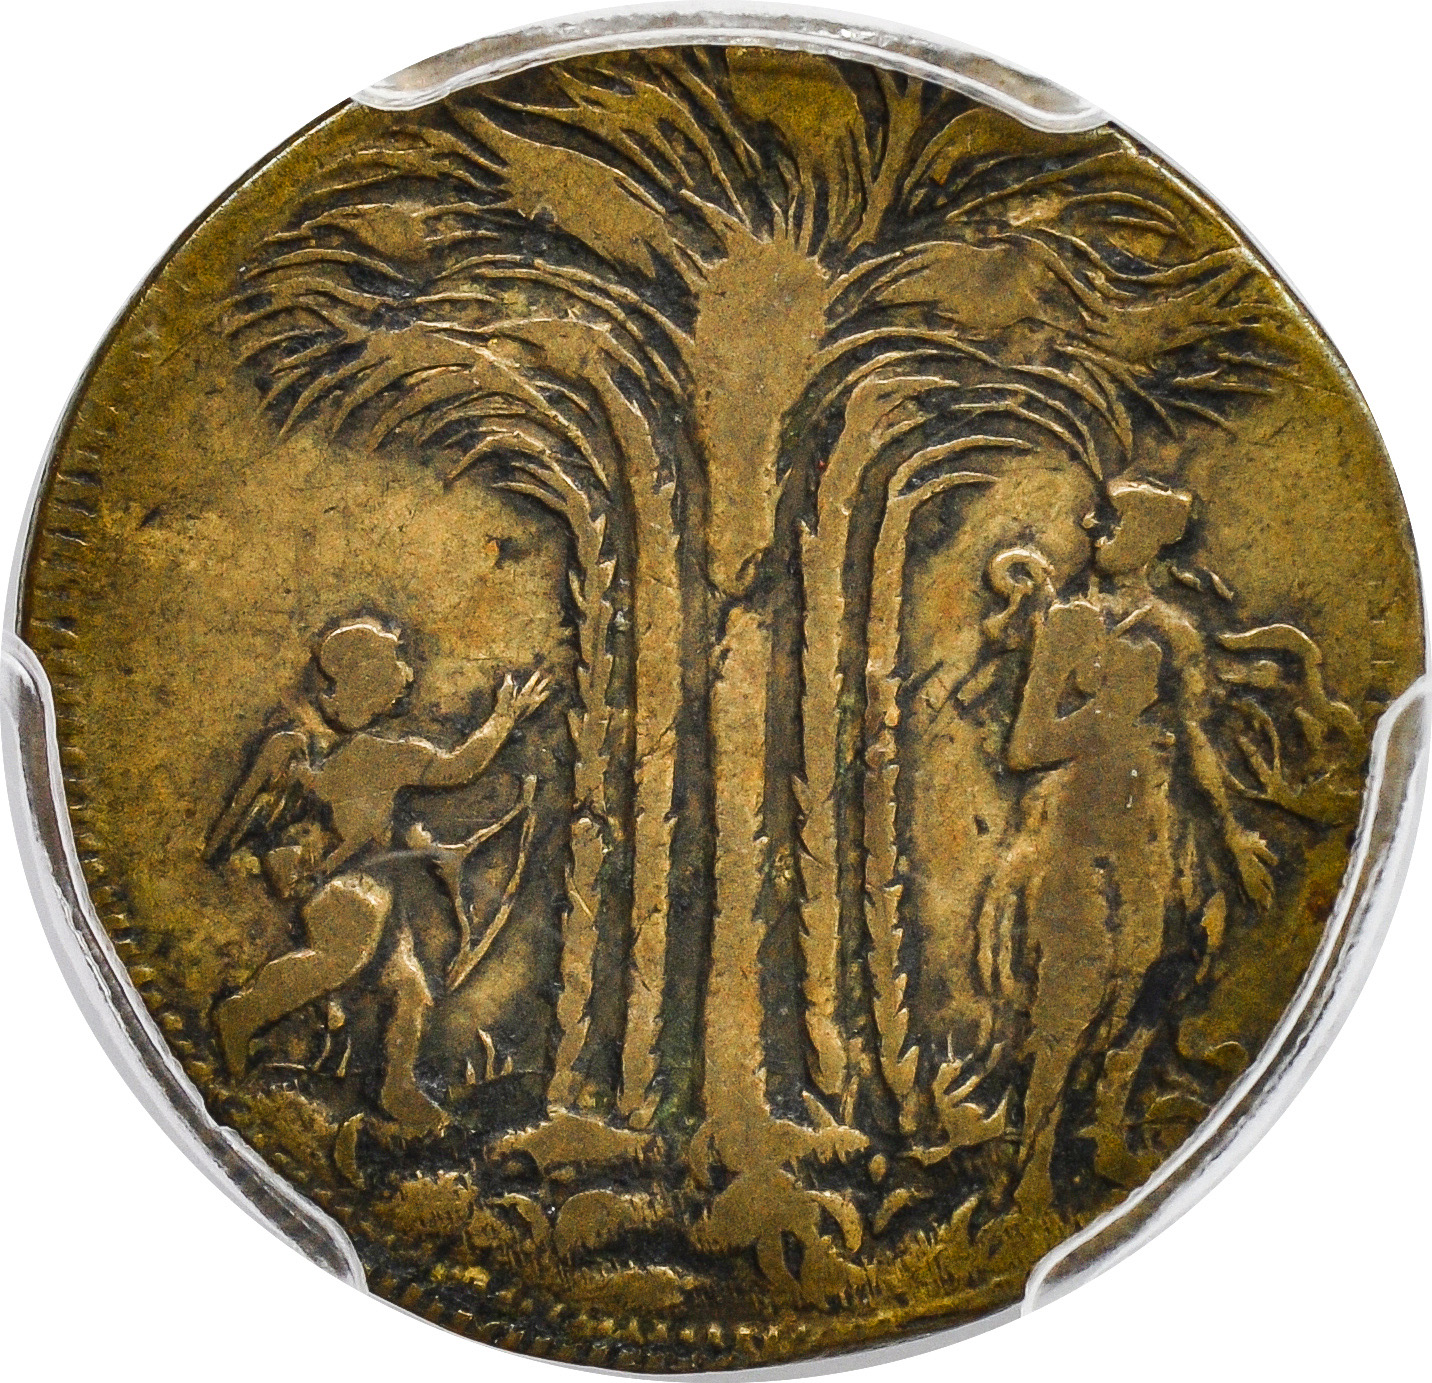 NEW YORKE BRASS TOKEN  Rare Coin Wholesalers, a S.L.Contursi Company